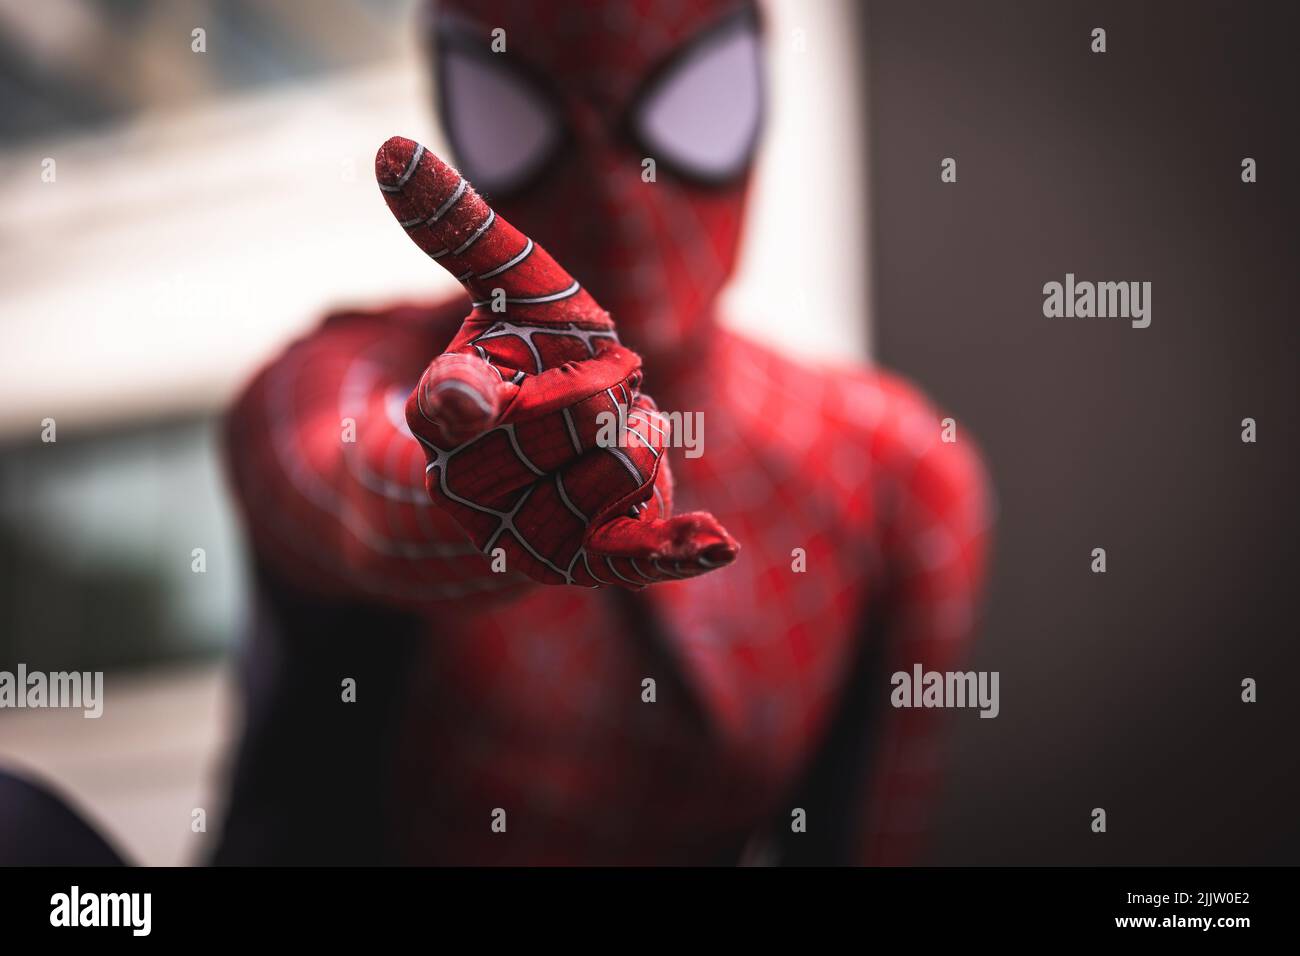 https://c8.alamy.com/compfr/2jjw0e2/un-gros-plan-de-spider-man-regardant-l-appareil-photo-avec-sa-main-devant-dans-un-arriere-plan-flou-2jjw0e2.jpg